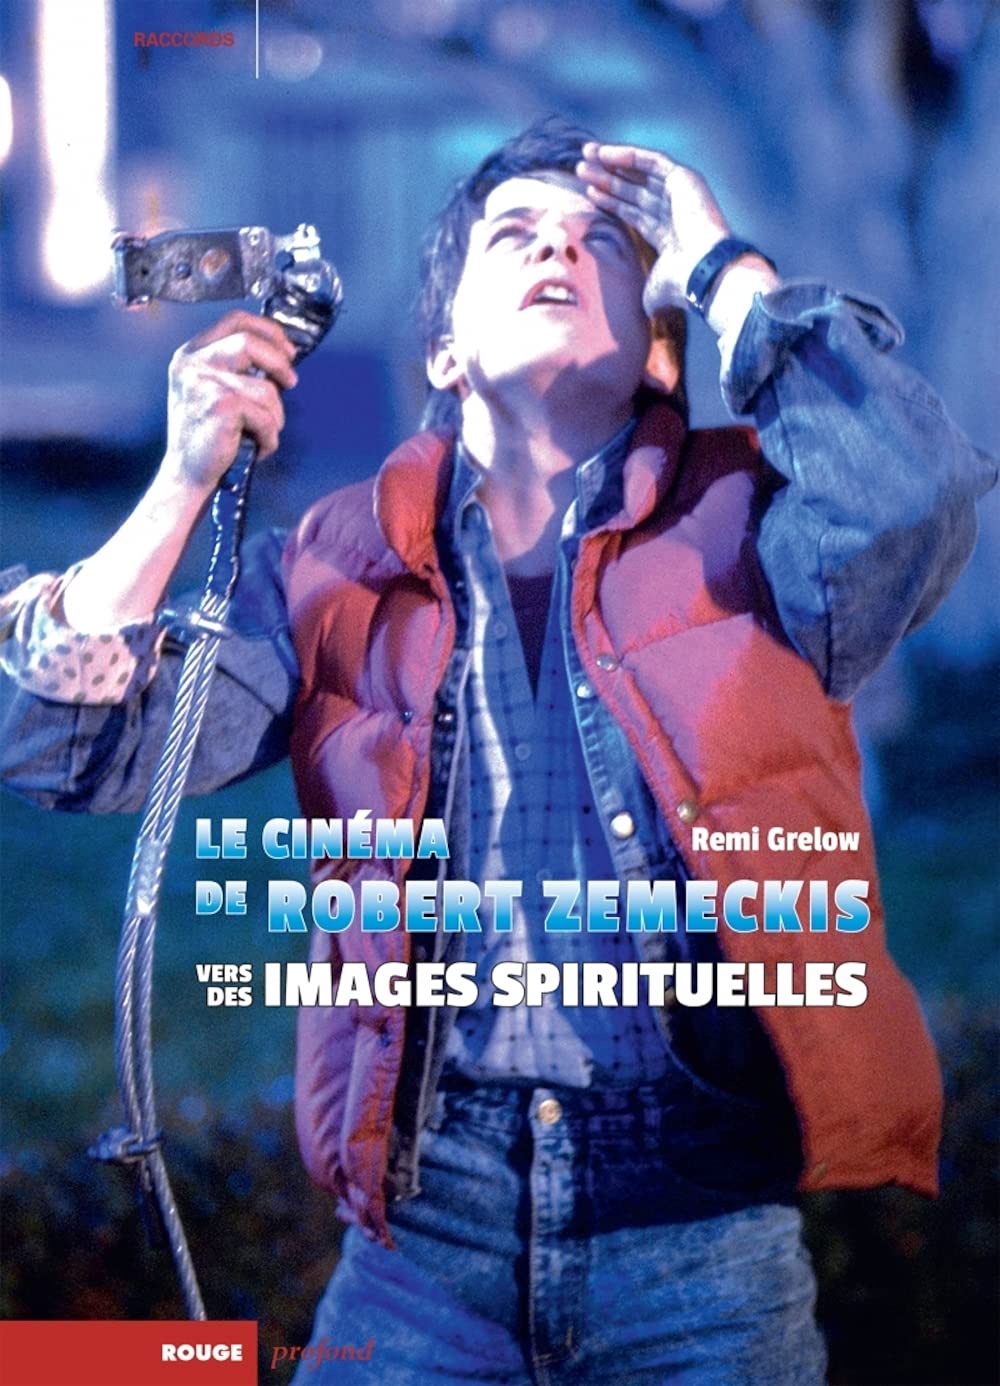 Le Cinéma de Robert Zemeckis, vers des images spirituelles, de Rémi Grelow